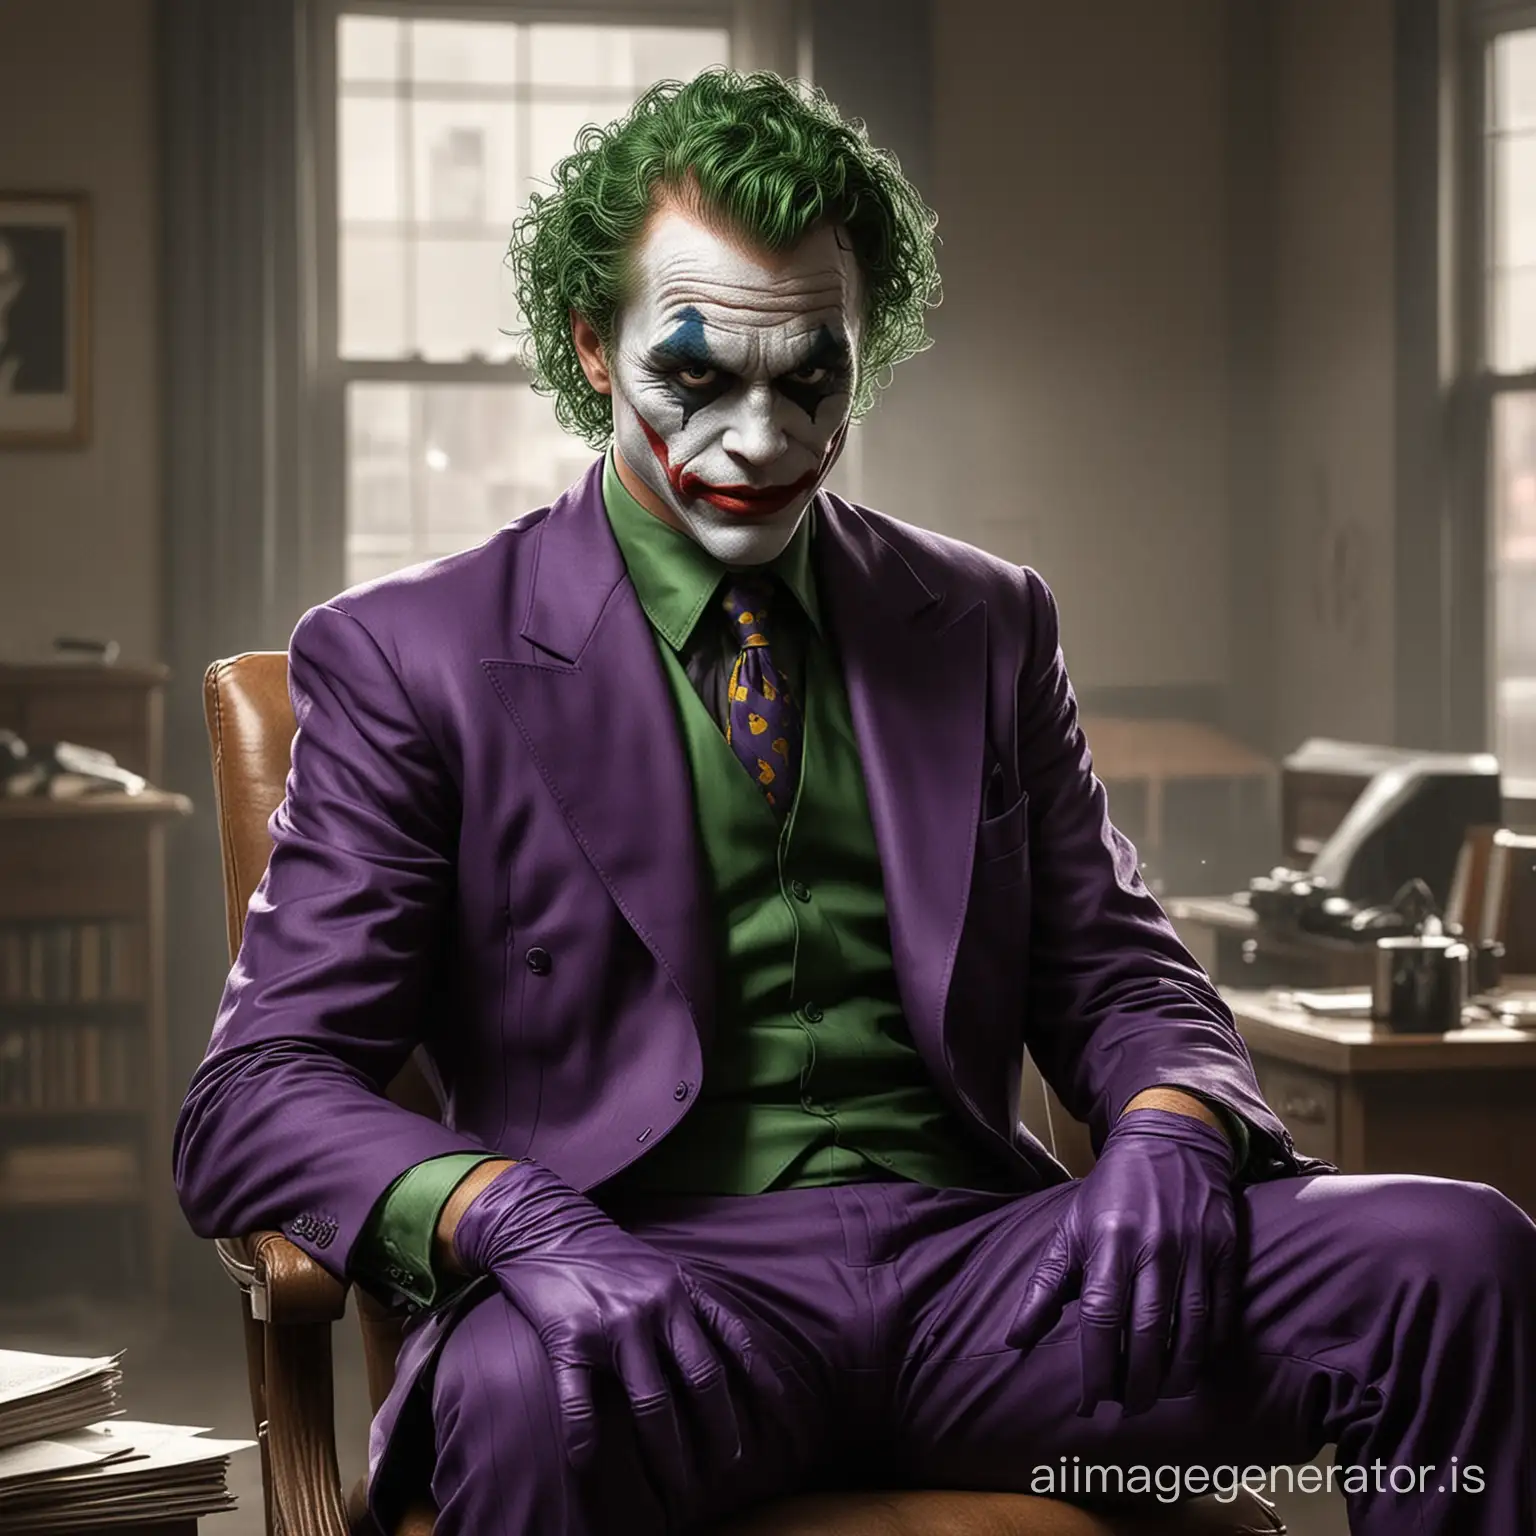 Realistic-Joker-Sitting-in-1930s-Office-Retro-Gangster-in-Purple-Suit